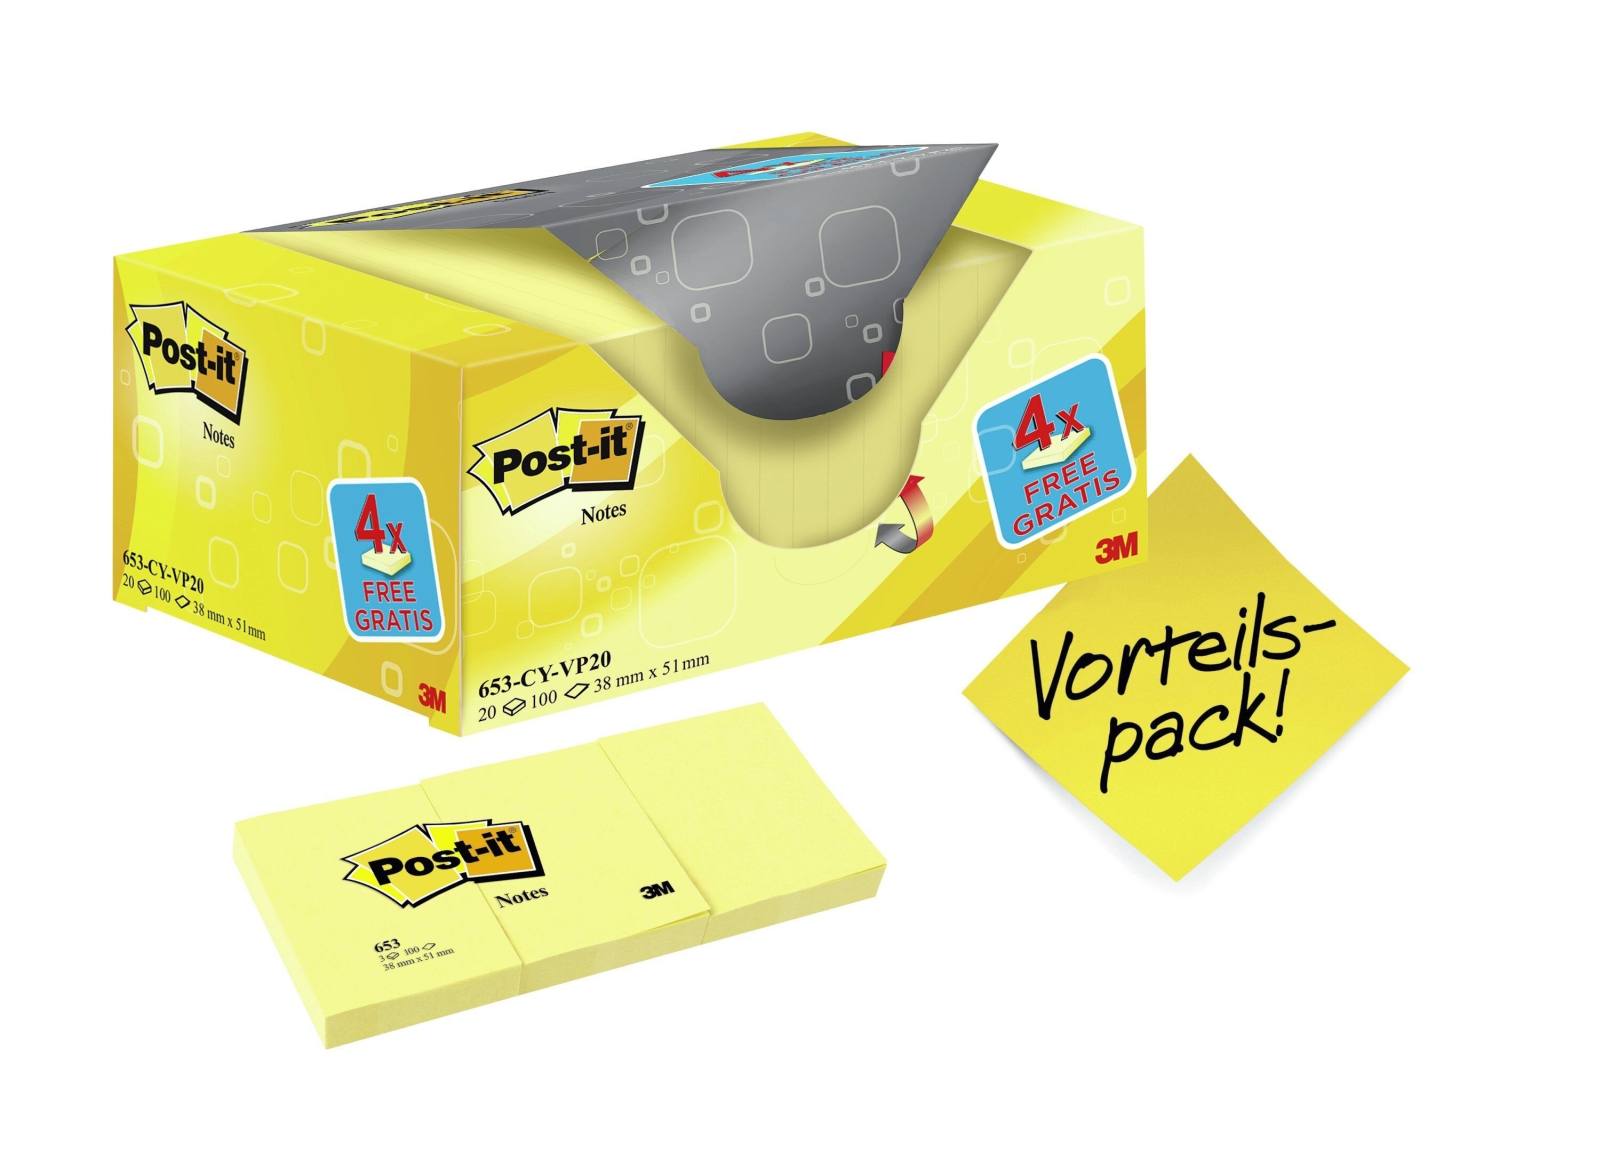 3M Post-it Notes Promotion 653Y-20, 20 blocs de 100 feuilles dans une boîte à prix avantageux, jaune, 51 mm x 38 mm